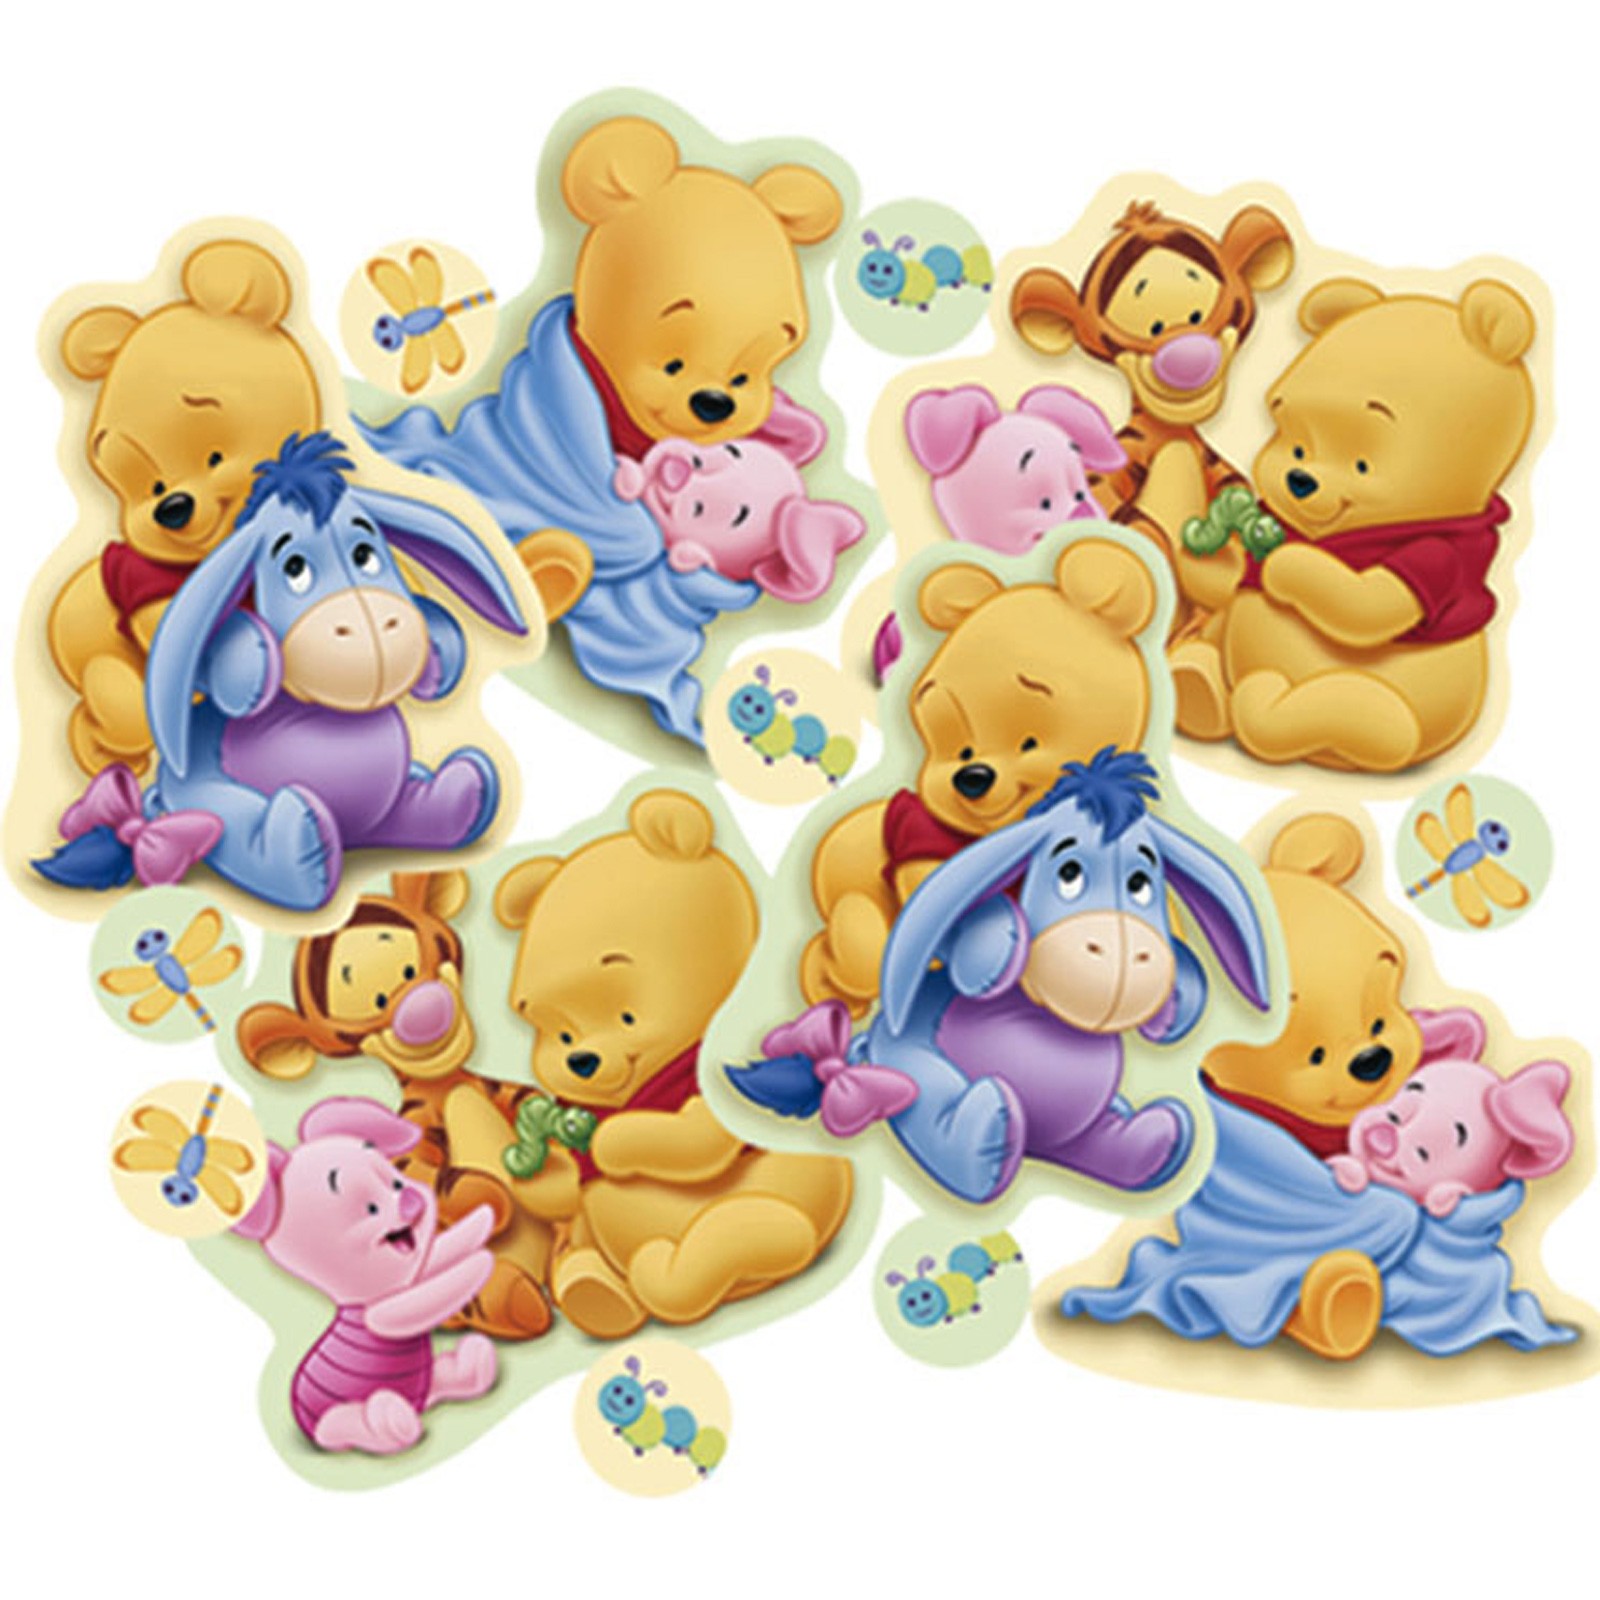 Fotos Baby Pooh Wallpaper